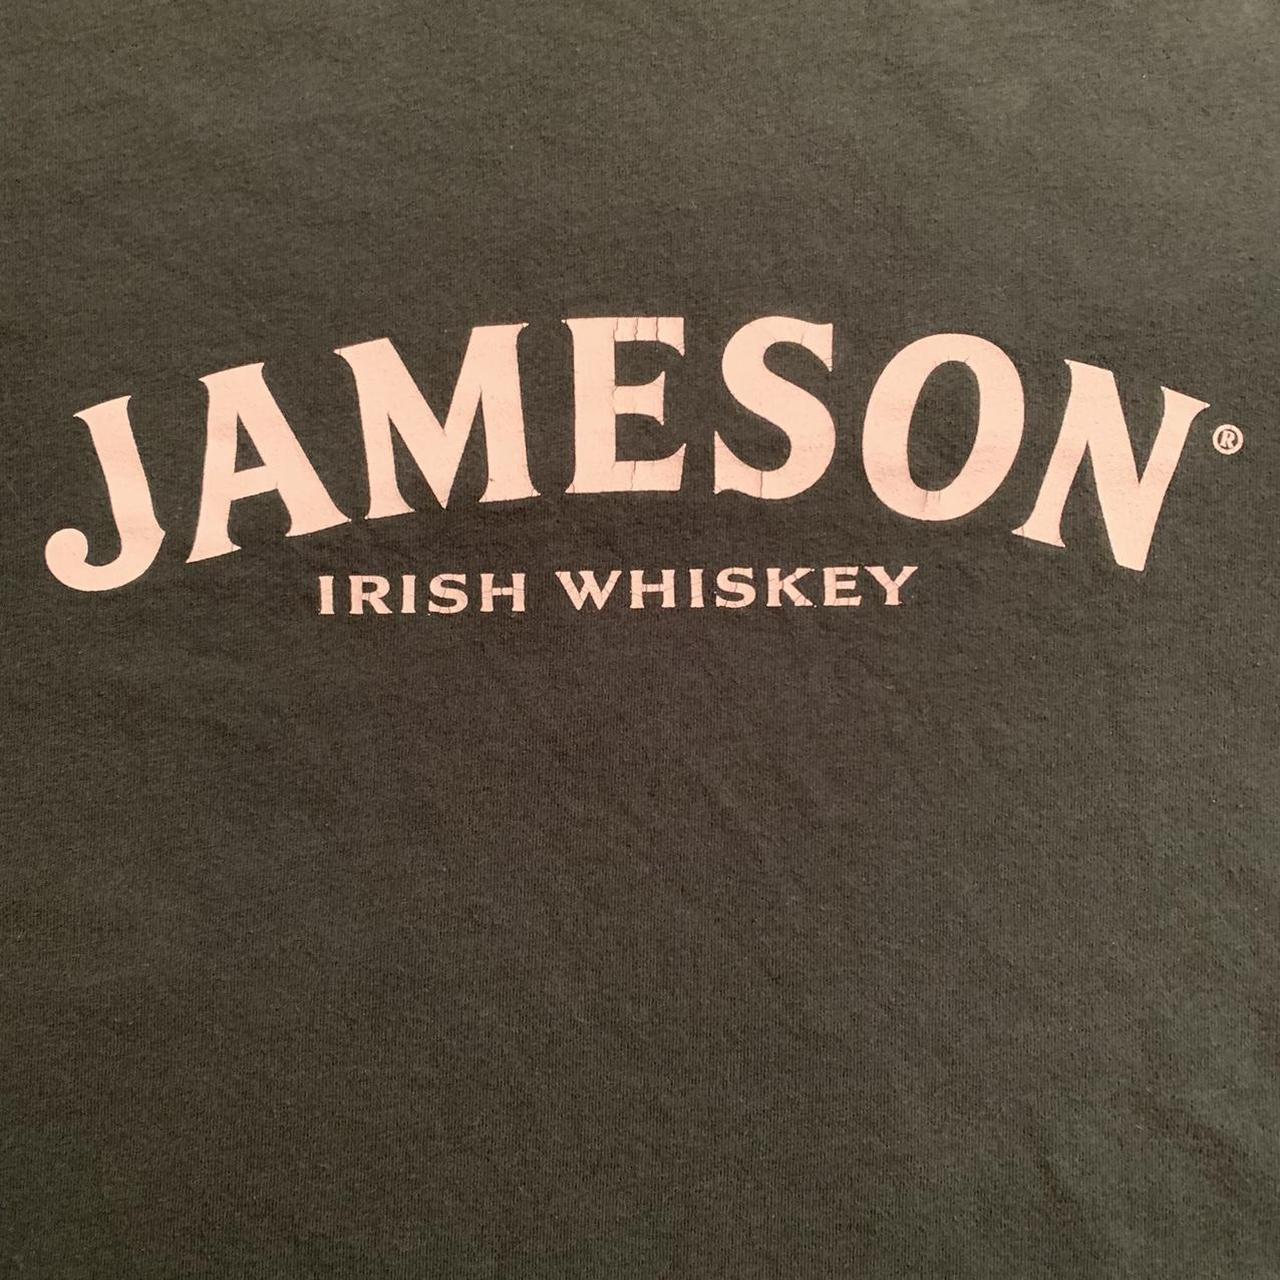 Product Image 2 - Jameson irish whiskey t-shirt. FREE